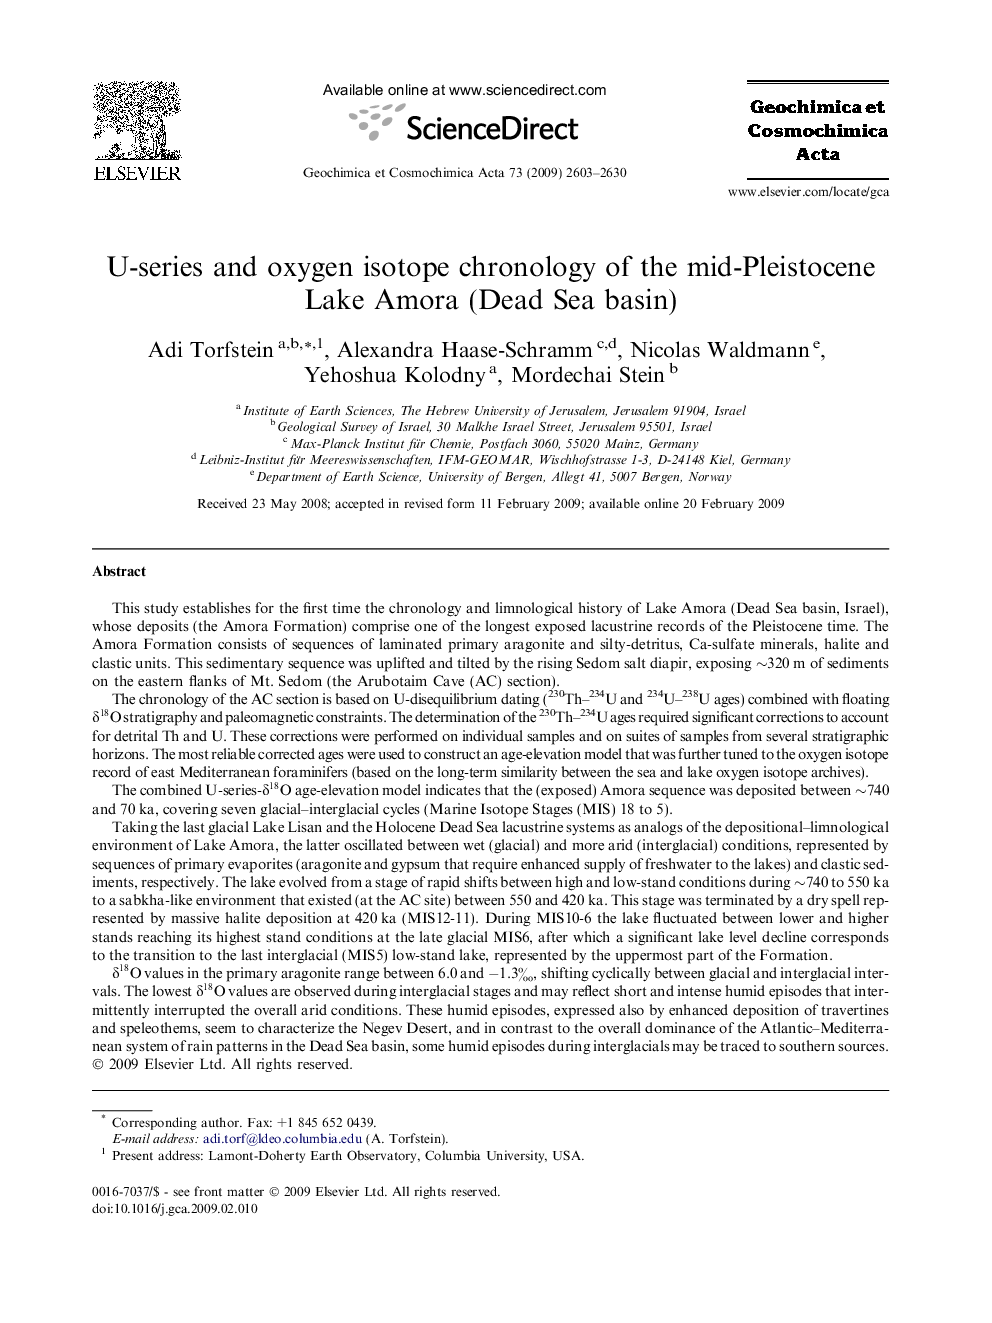 U-series and oxygen isotope chronology of the mid-Pleistocene Lake Amora (Dead Sea basin)